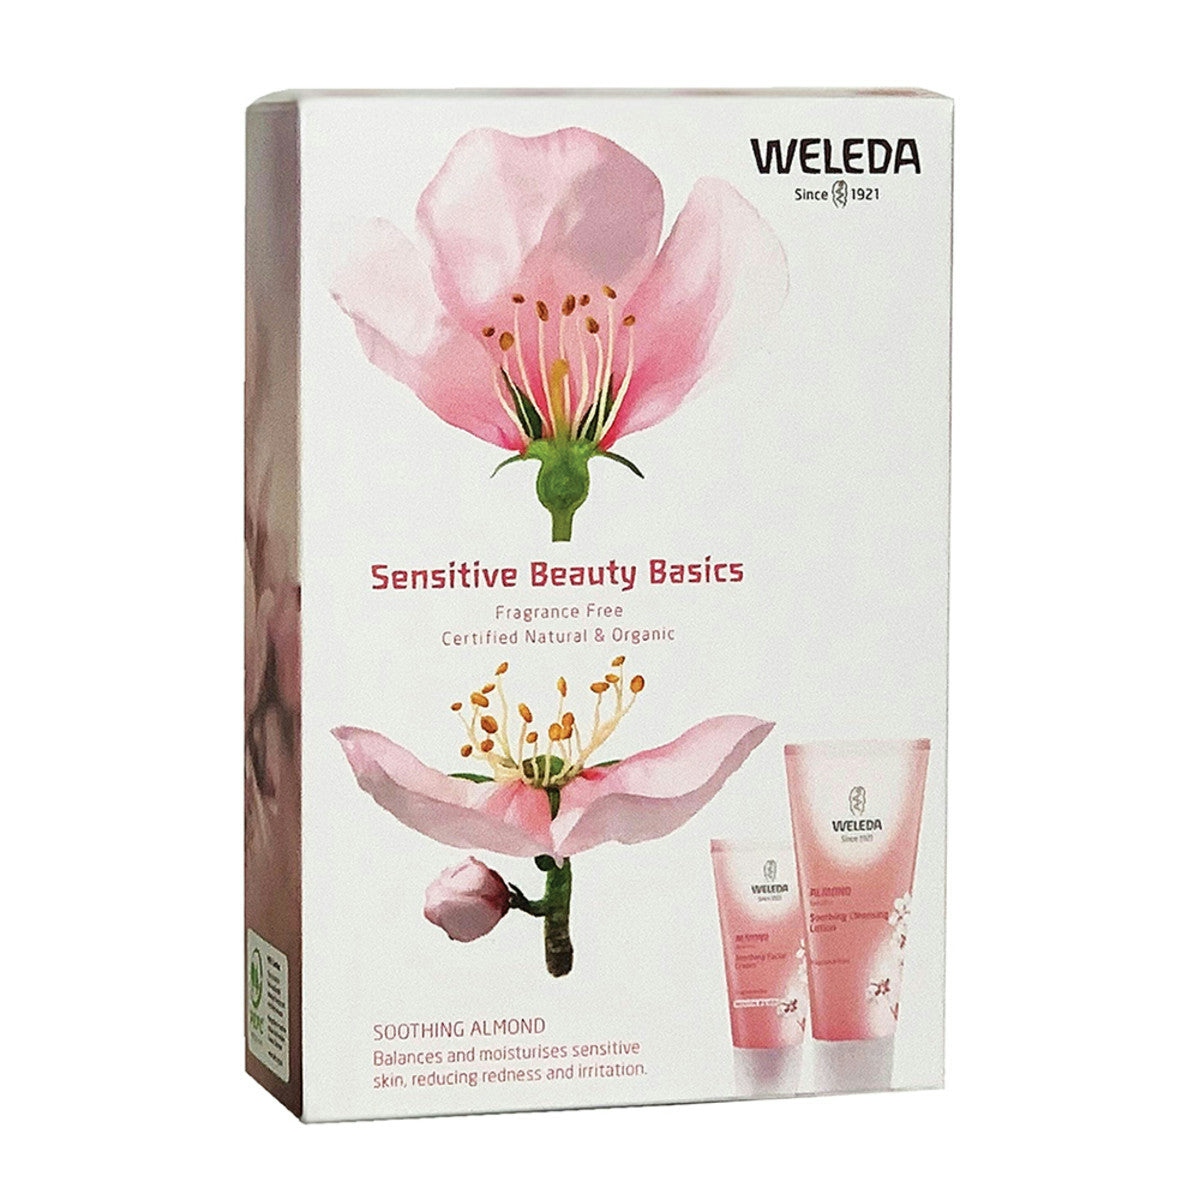 image of Weleda Sensitive Beauty Basics Pack on white background